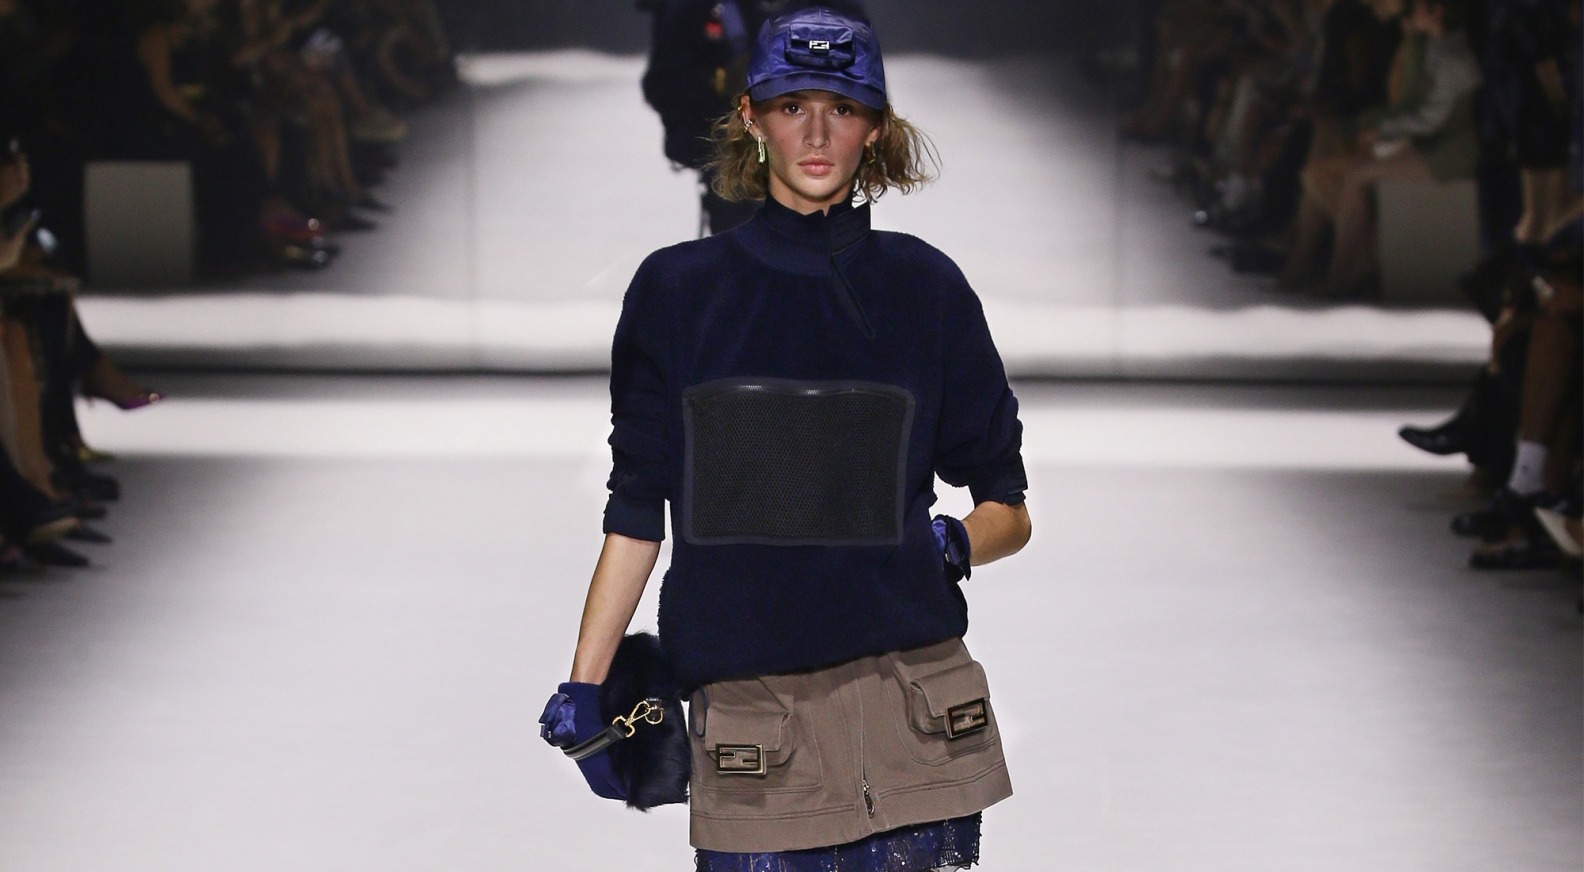 Histoire de mode: le sac Noé de Louis Vuitton